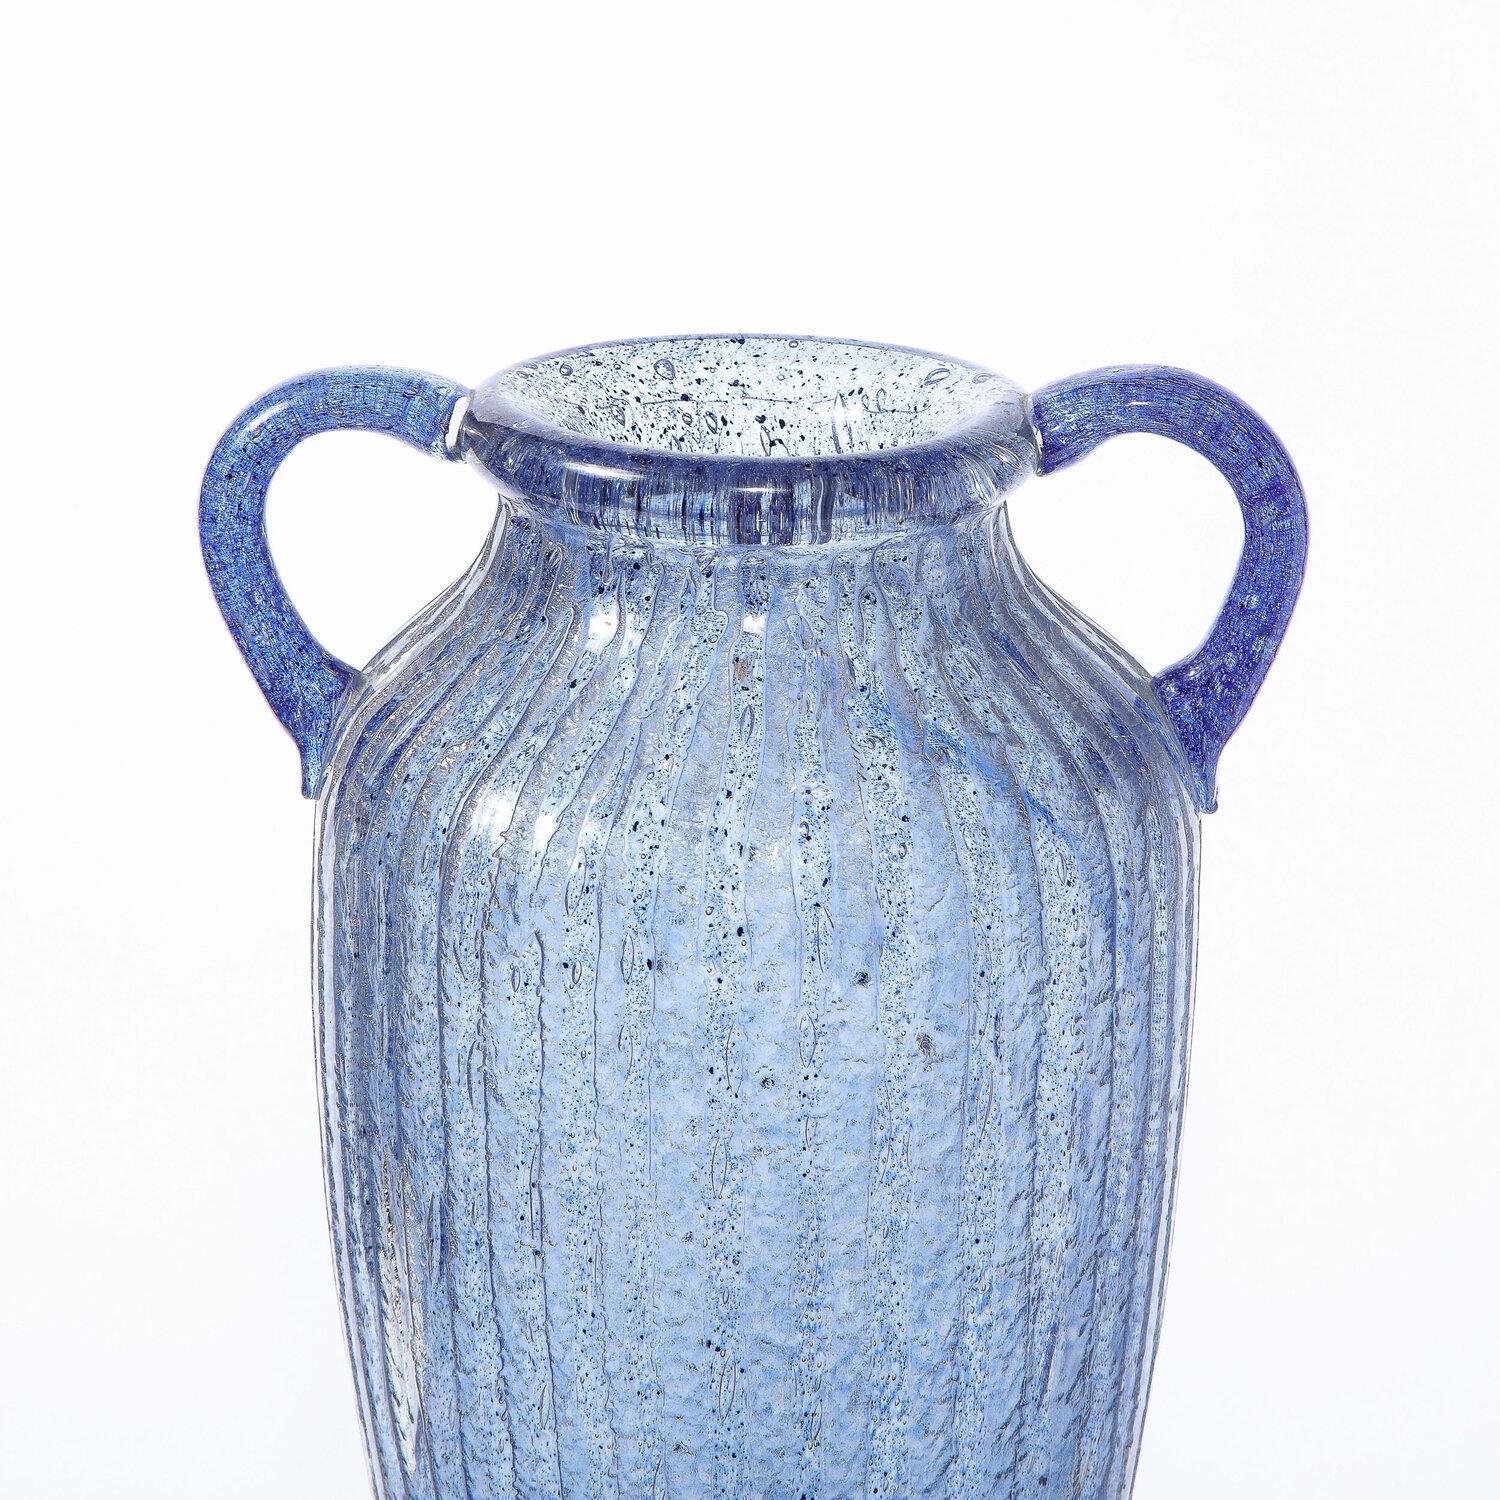 Diese raffinierte Amphora-Vase im Art déco-Stil wurde um 1925 in Frankreich von Nancy Daum hergestellt und signiert. Der wellenförmige Korpus wird am Hals von zwei abgerundeten Henkeln flankiert - alles aus lila gesprenkeltem Glas, das von einer